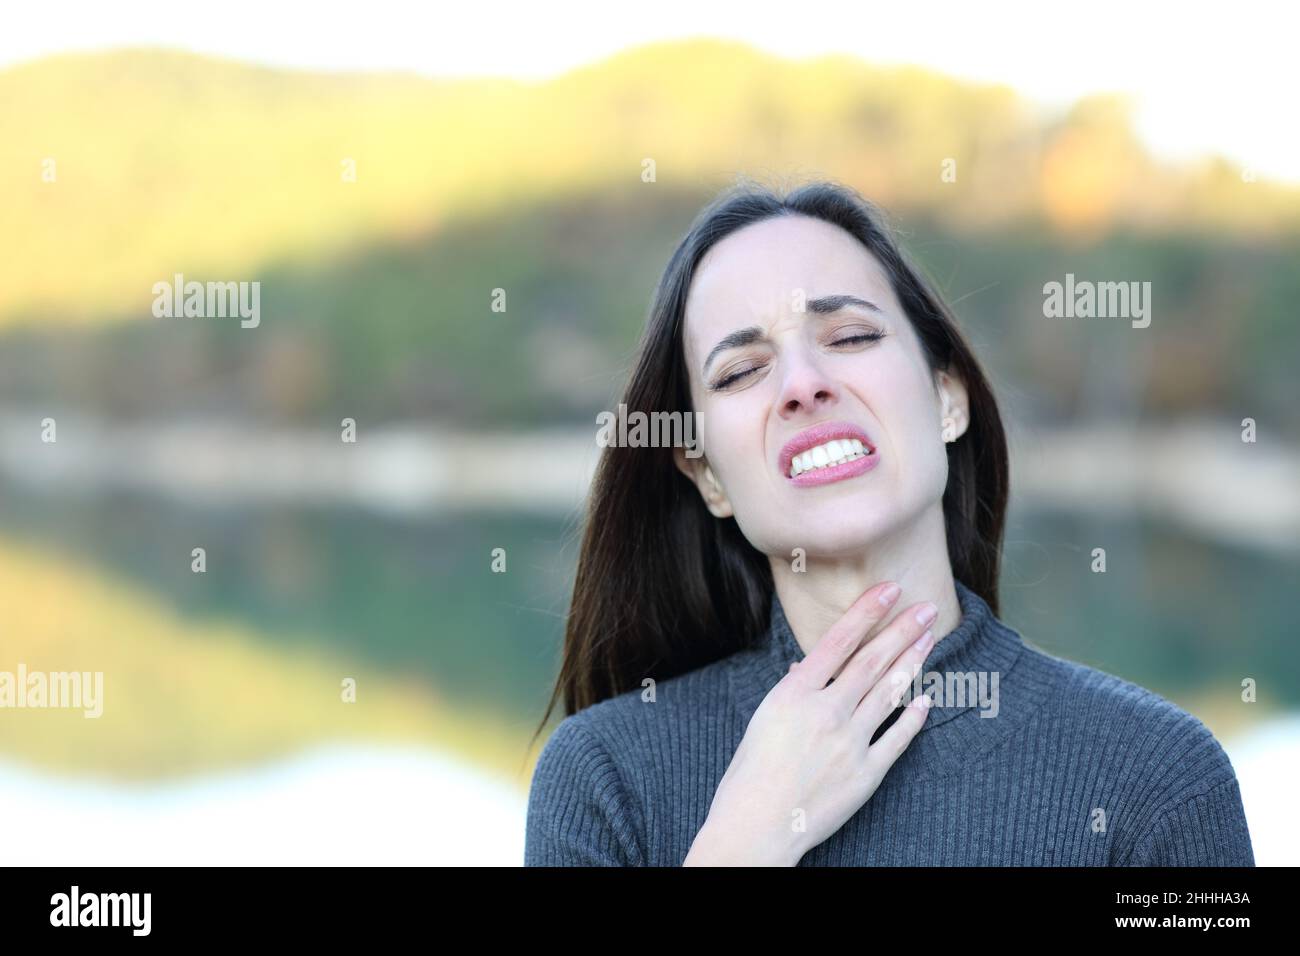 Vue avant portrait d'une femme souffrant de mal de gorge se plaignant dans la nature Banque D'Images